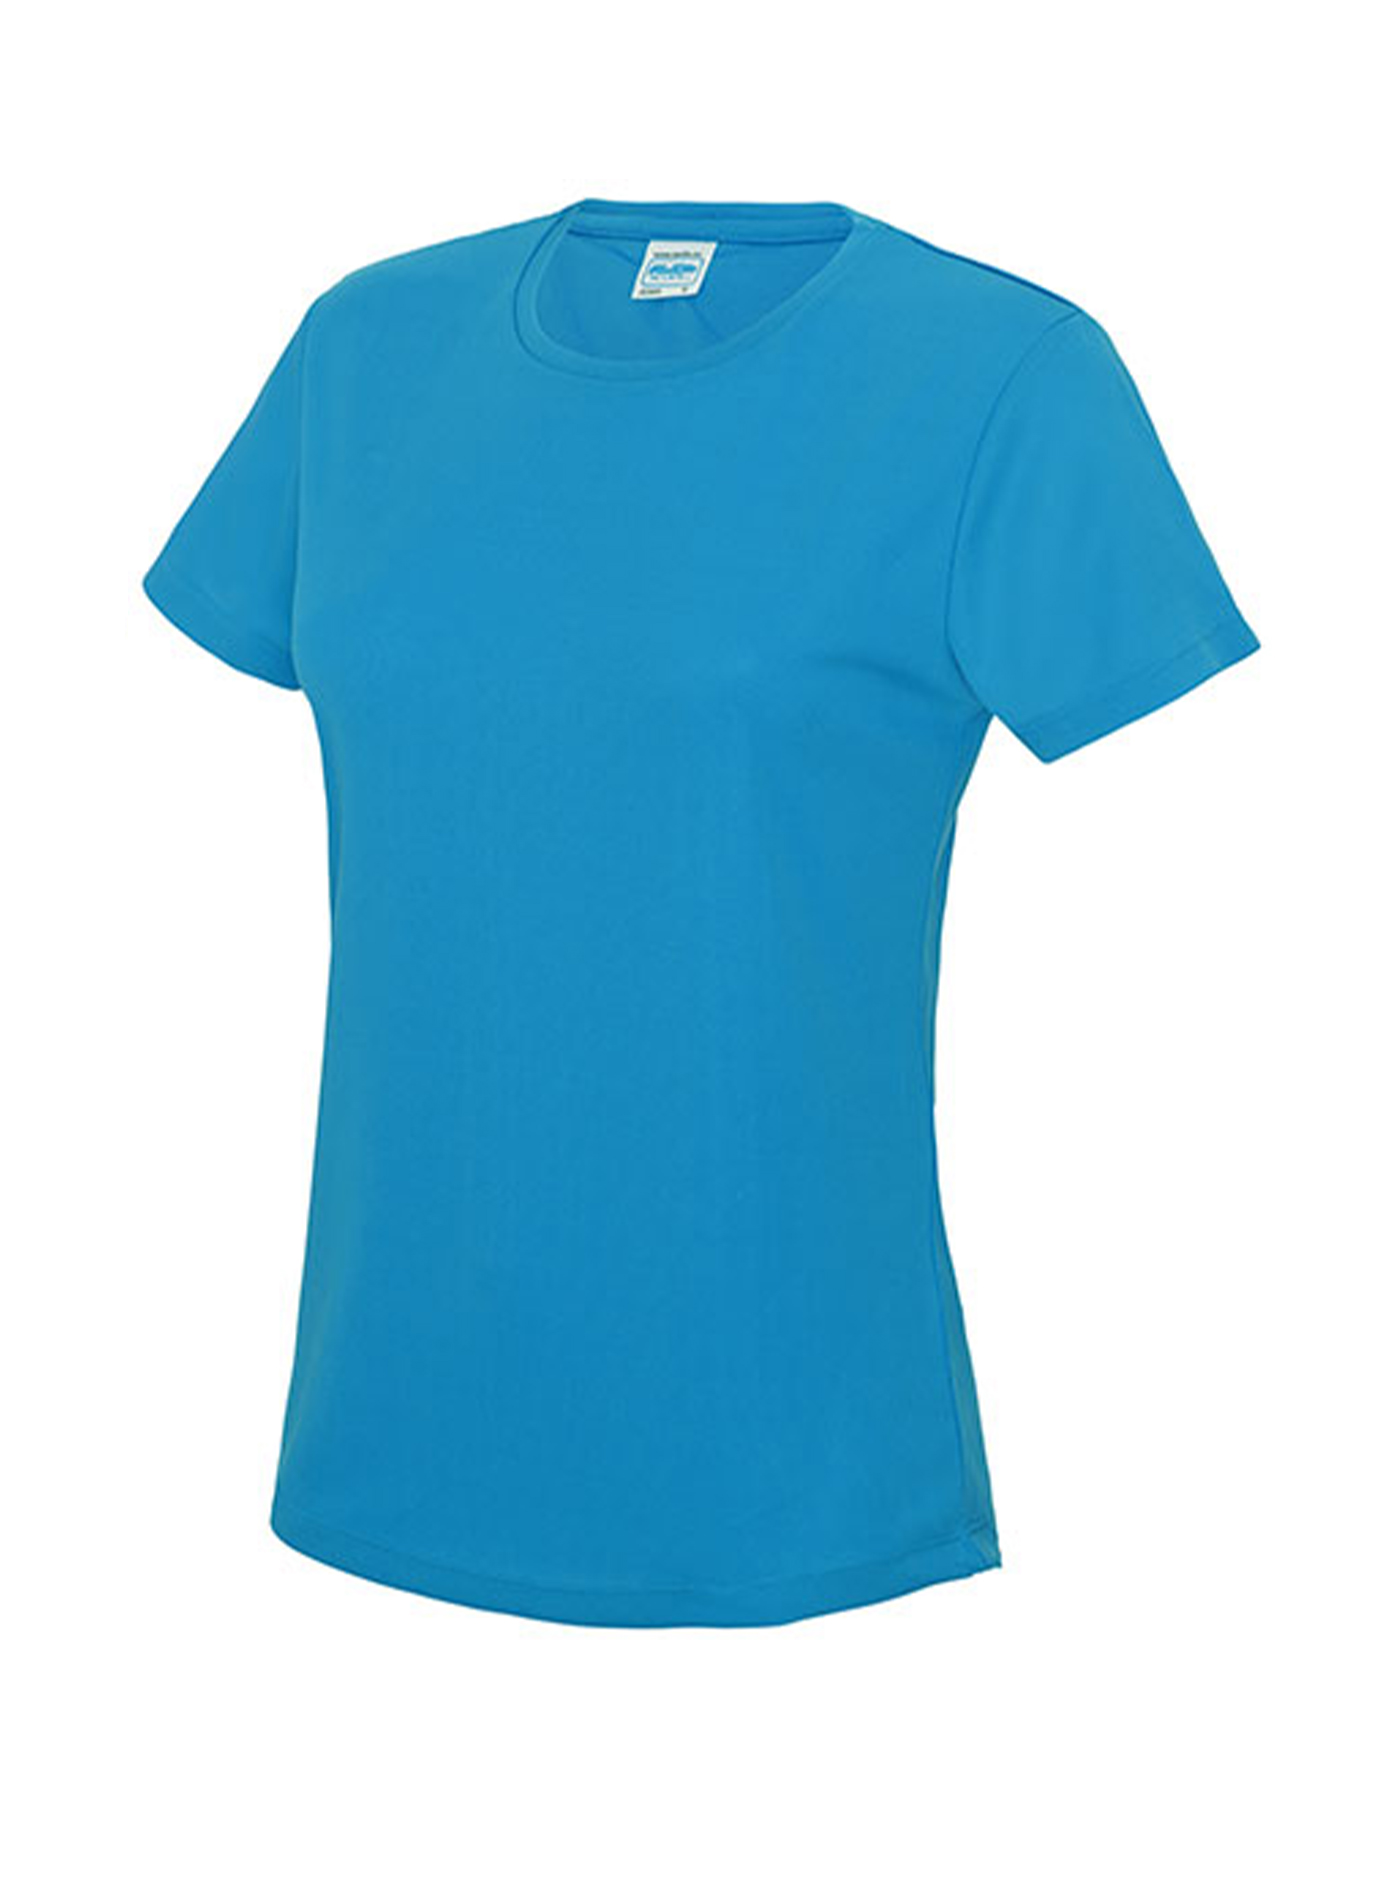 Dámské tričko Just Cool T - Safírově modrá žíhaná S